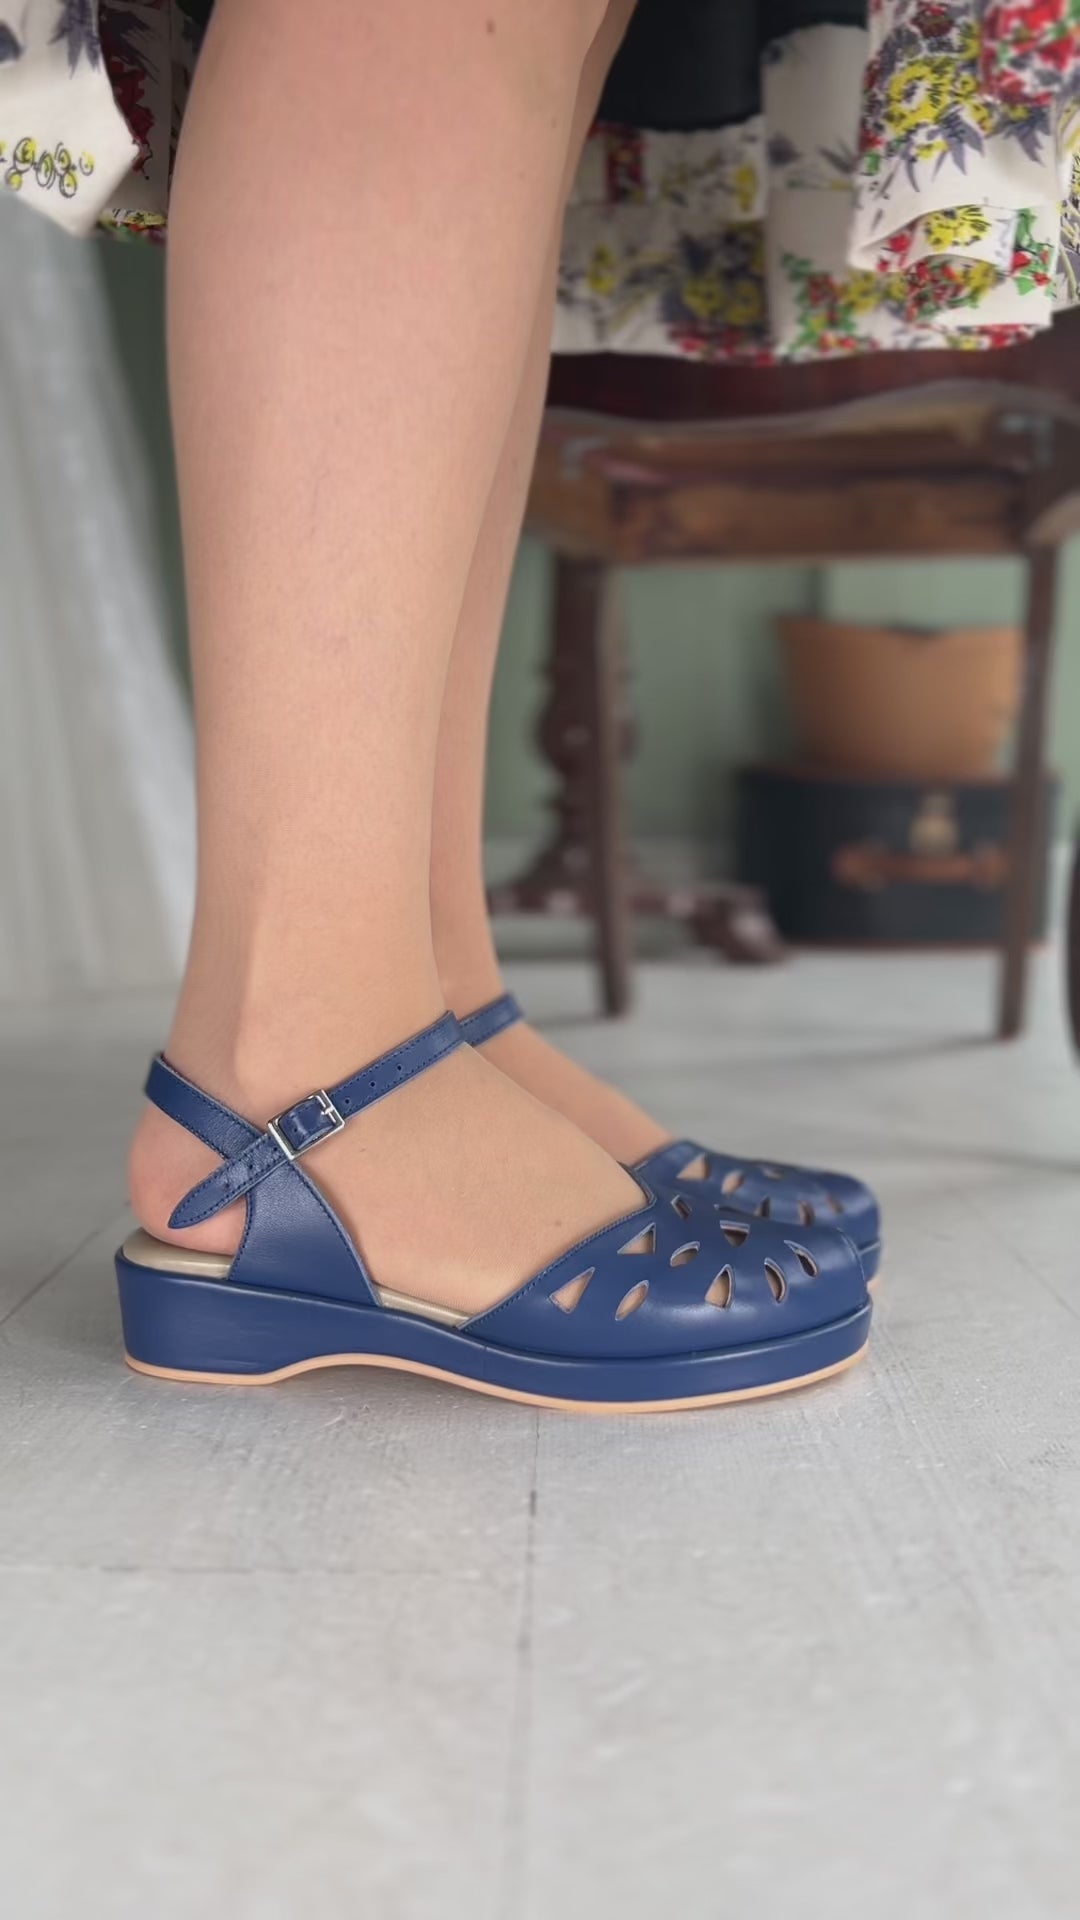 40'er / 50'er style sandal / wedge - mørkeblå - Sidse